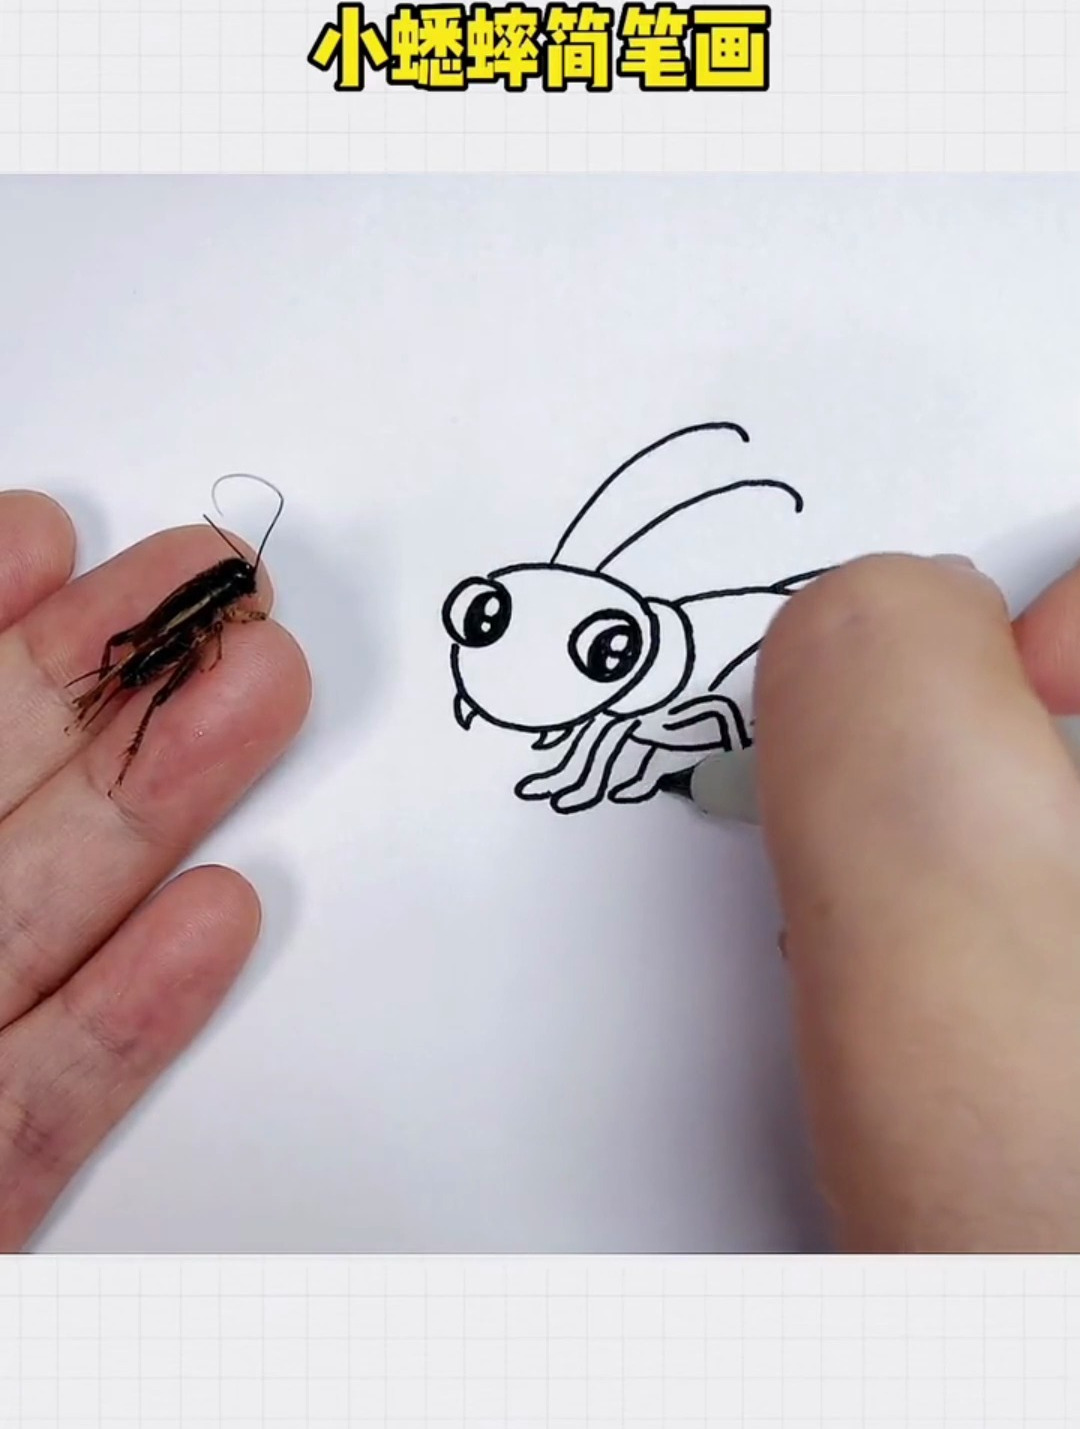 在花盆里发现的小蟋蟀 画成卡通简笔画